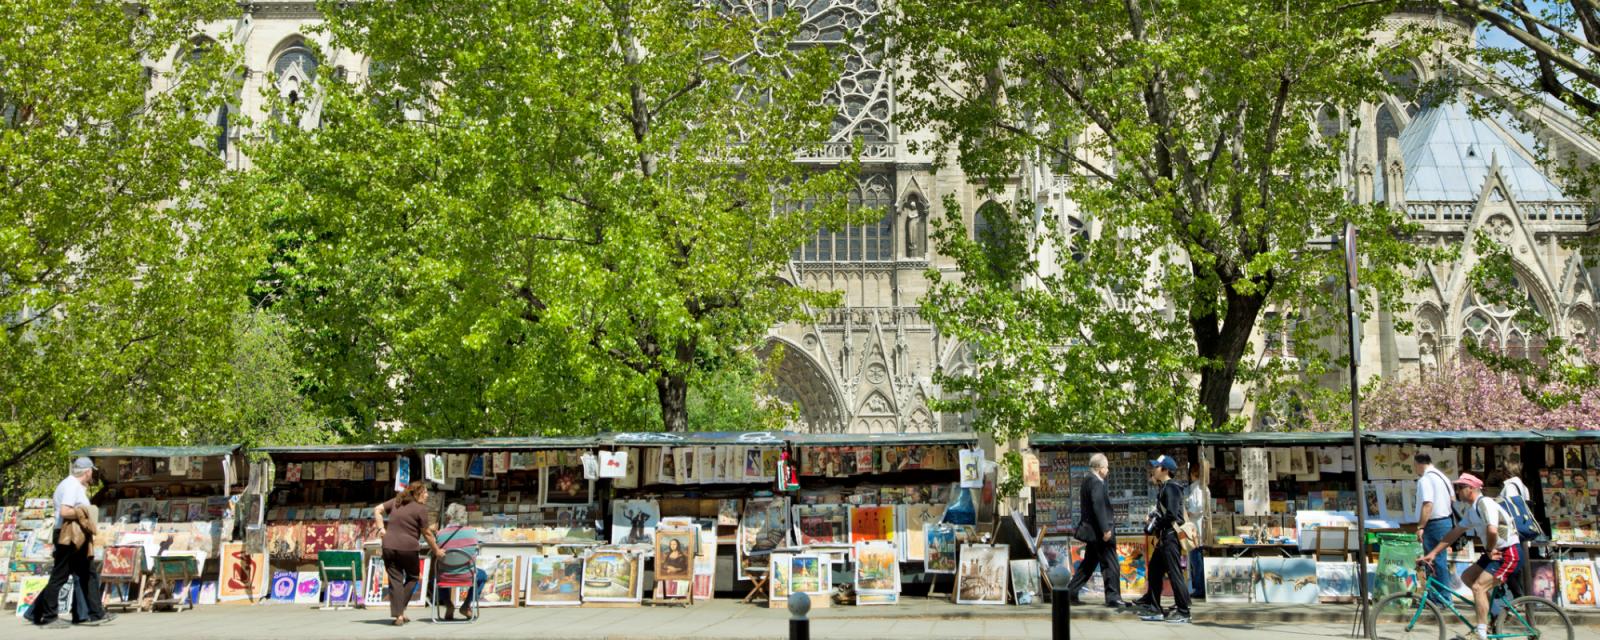 Geniet van literatuur in Parijs 